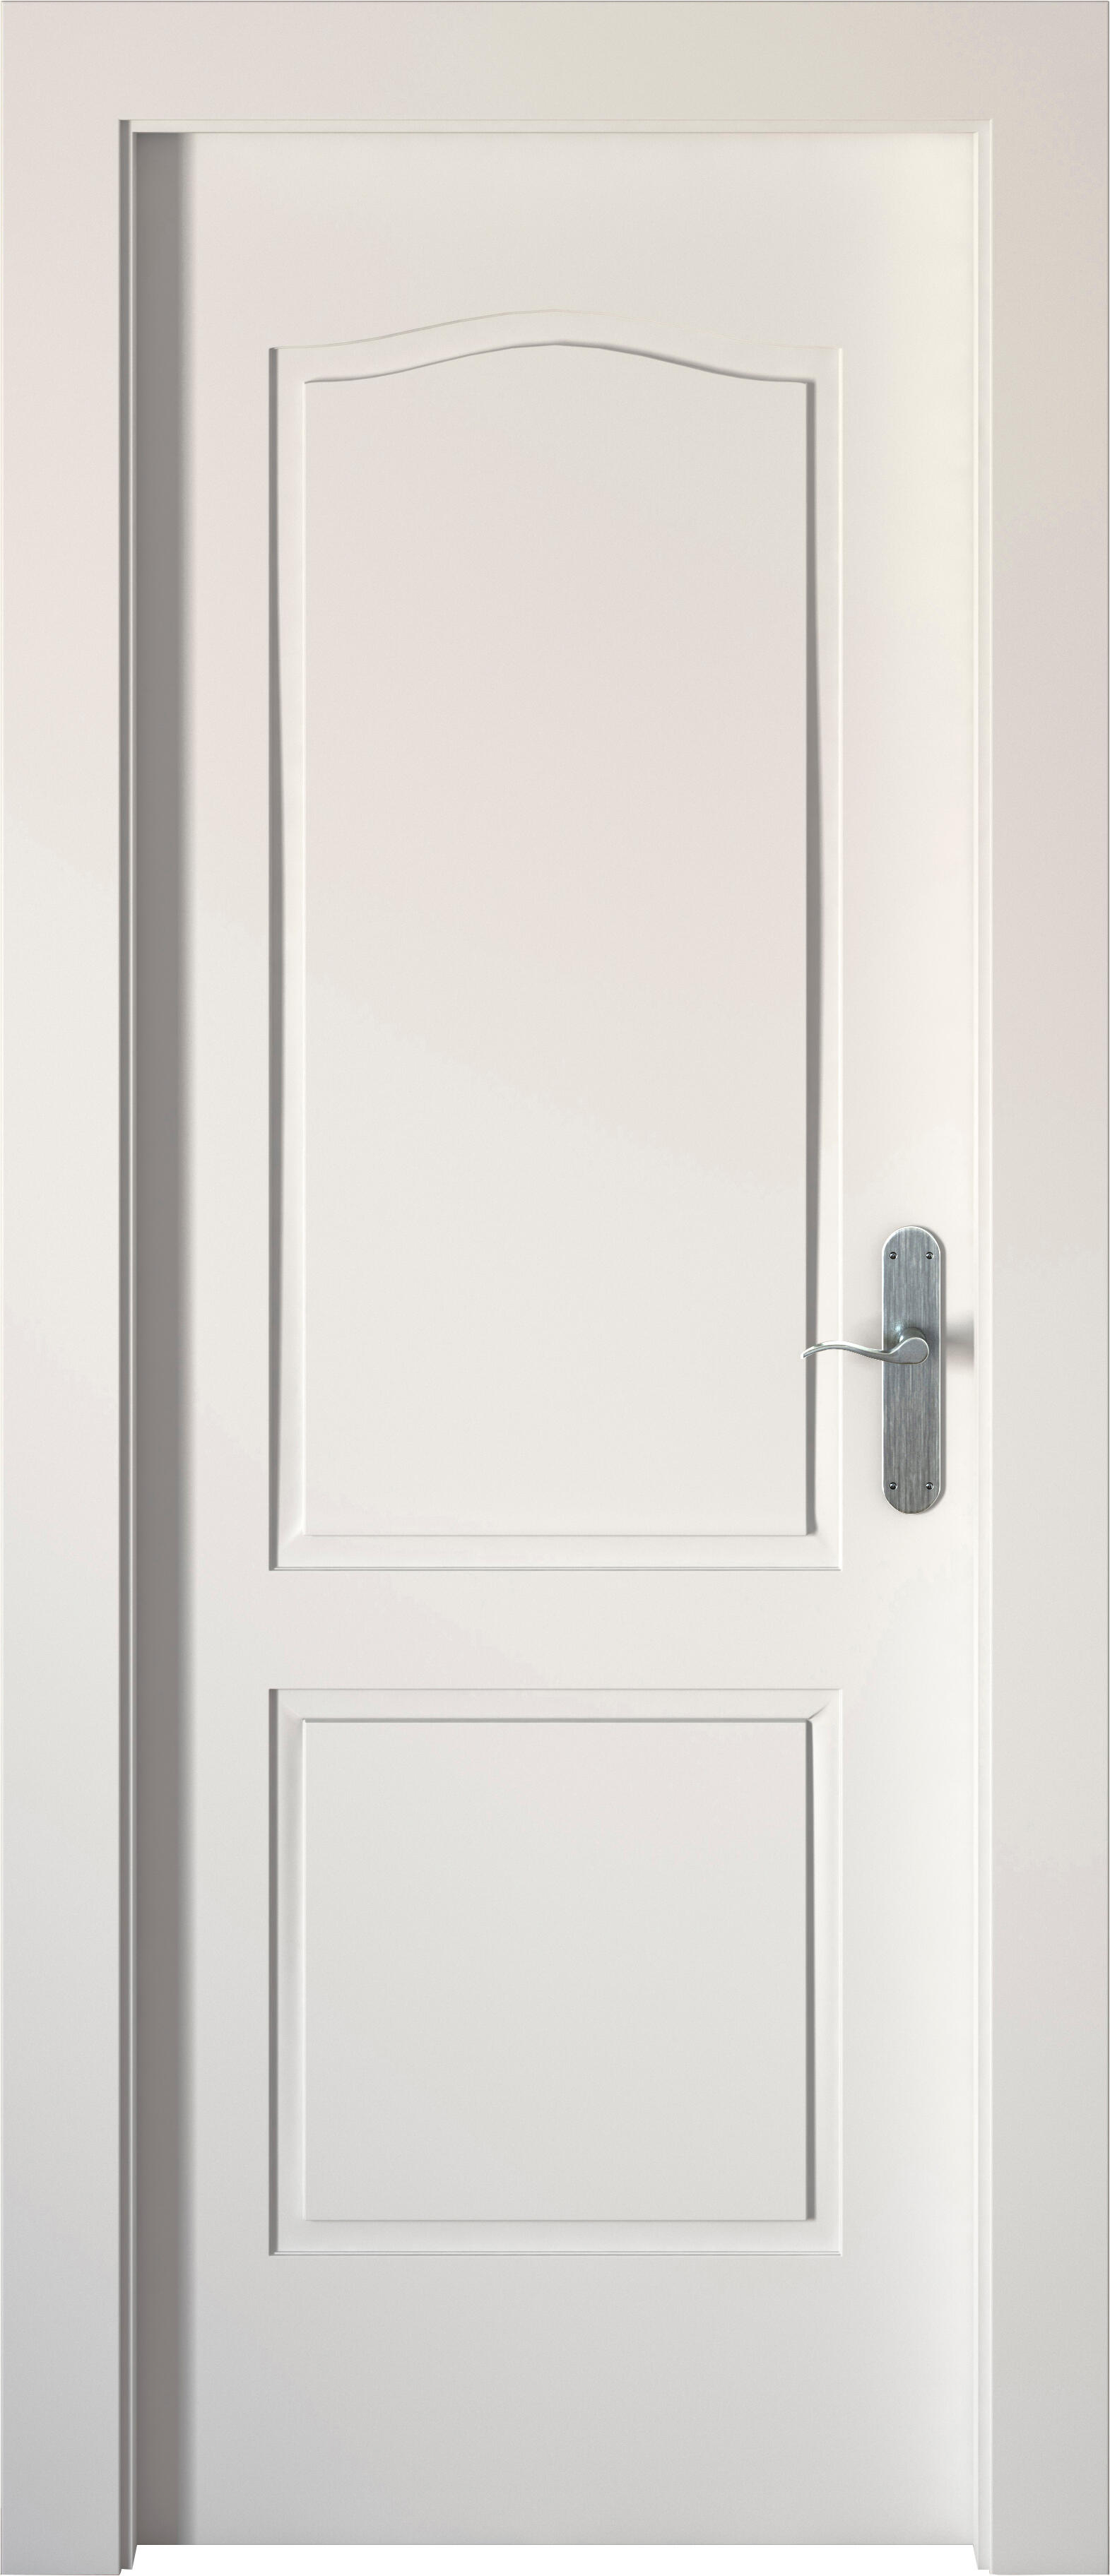 Puerta abatible praga blanca aero blanco izquierda de 90x30 y 72.5cm